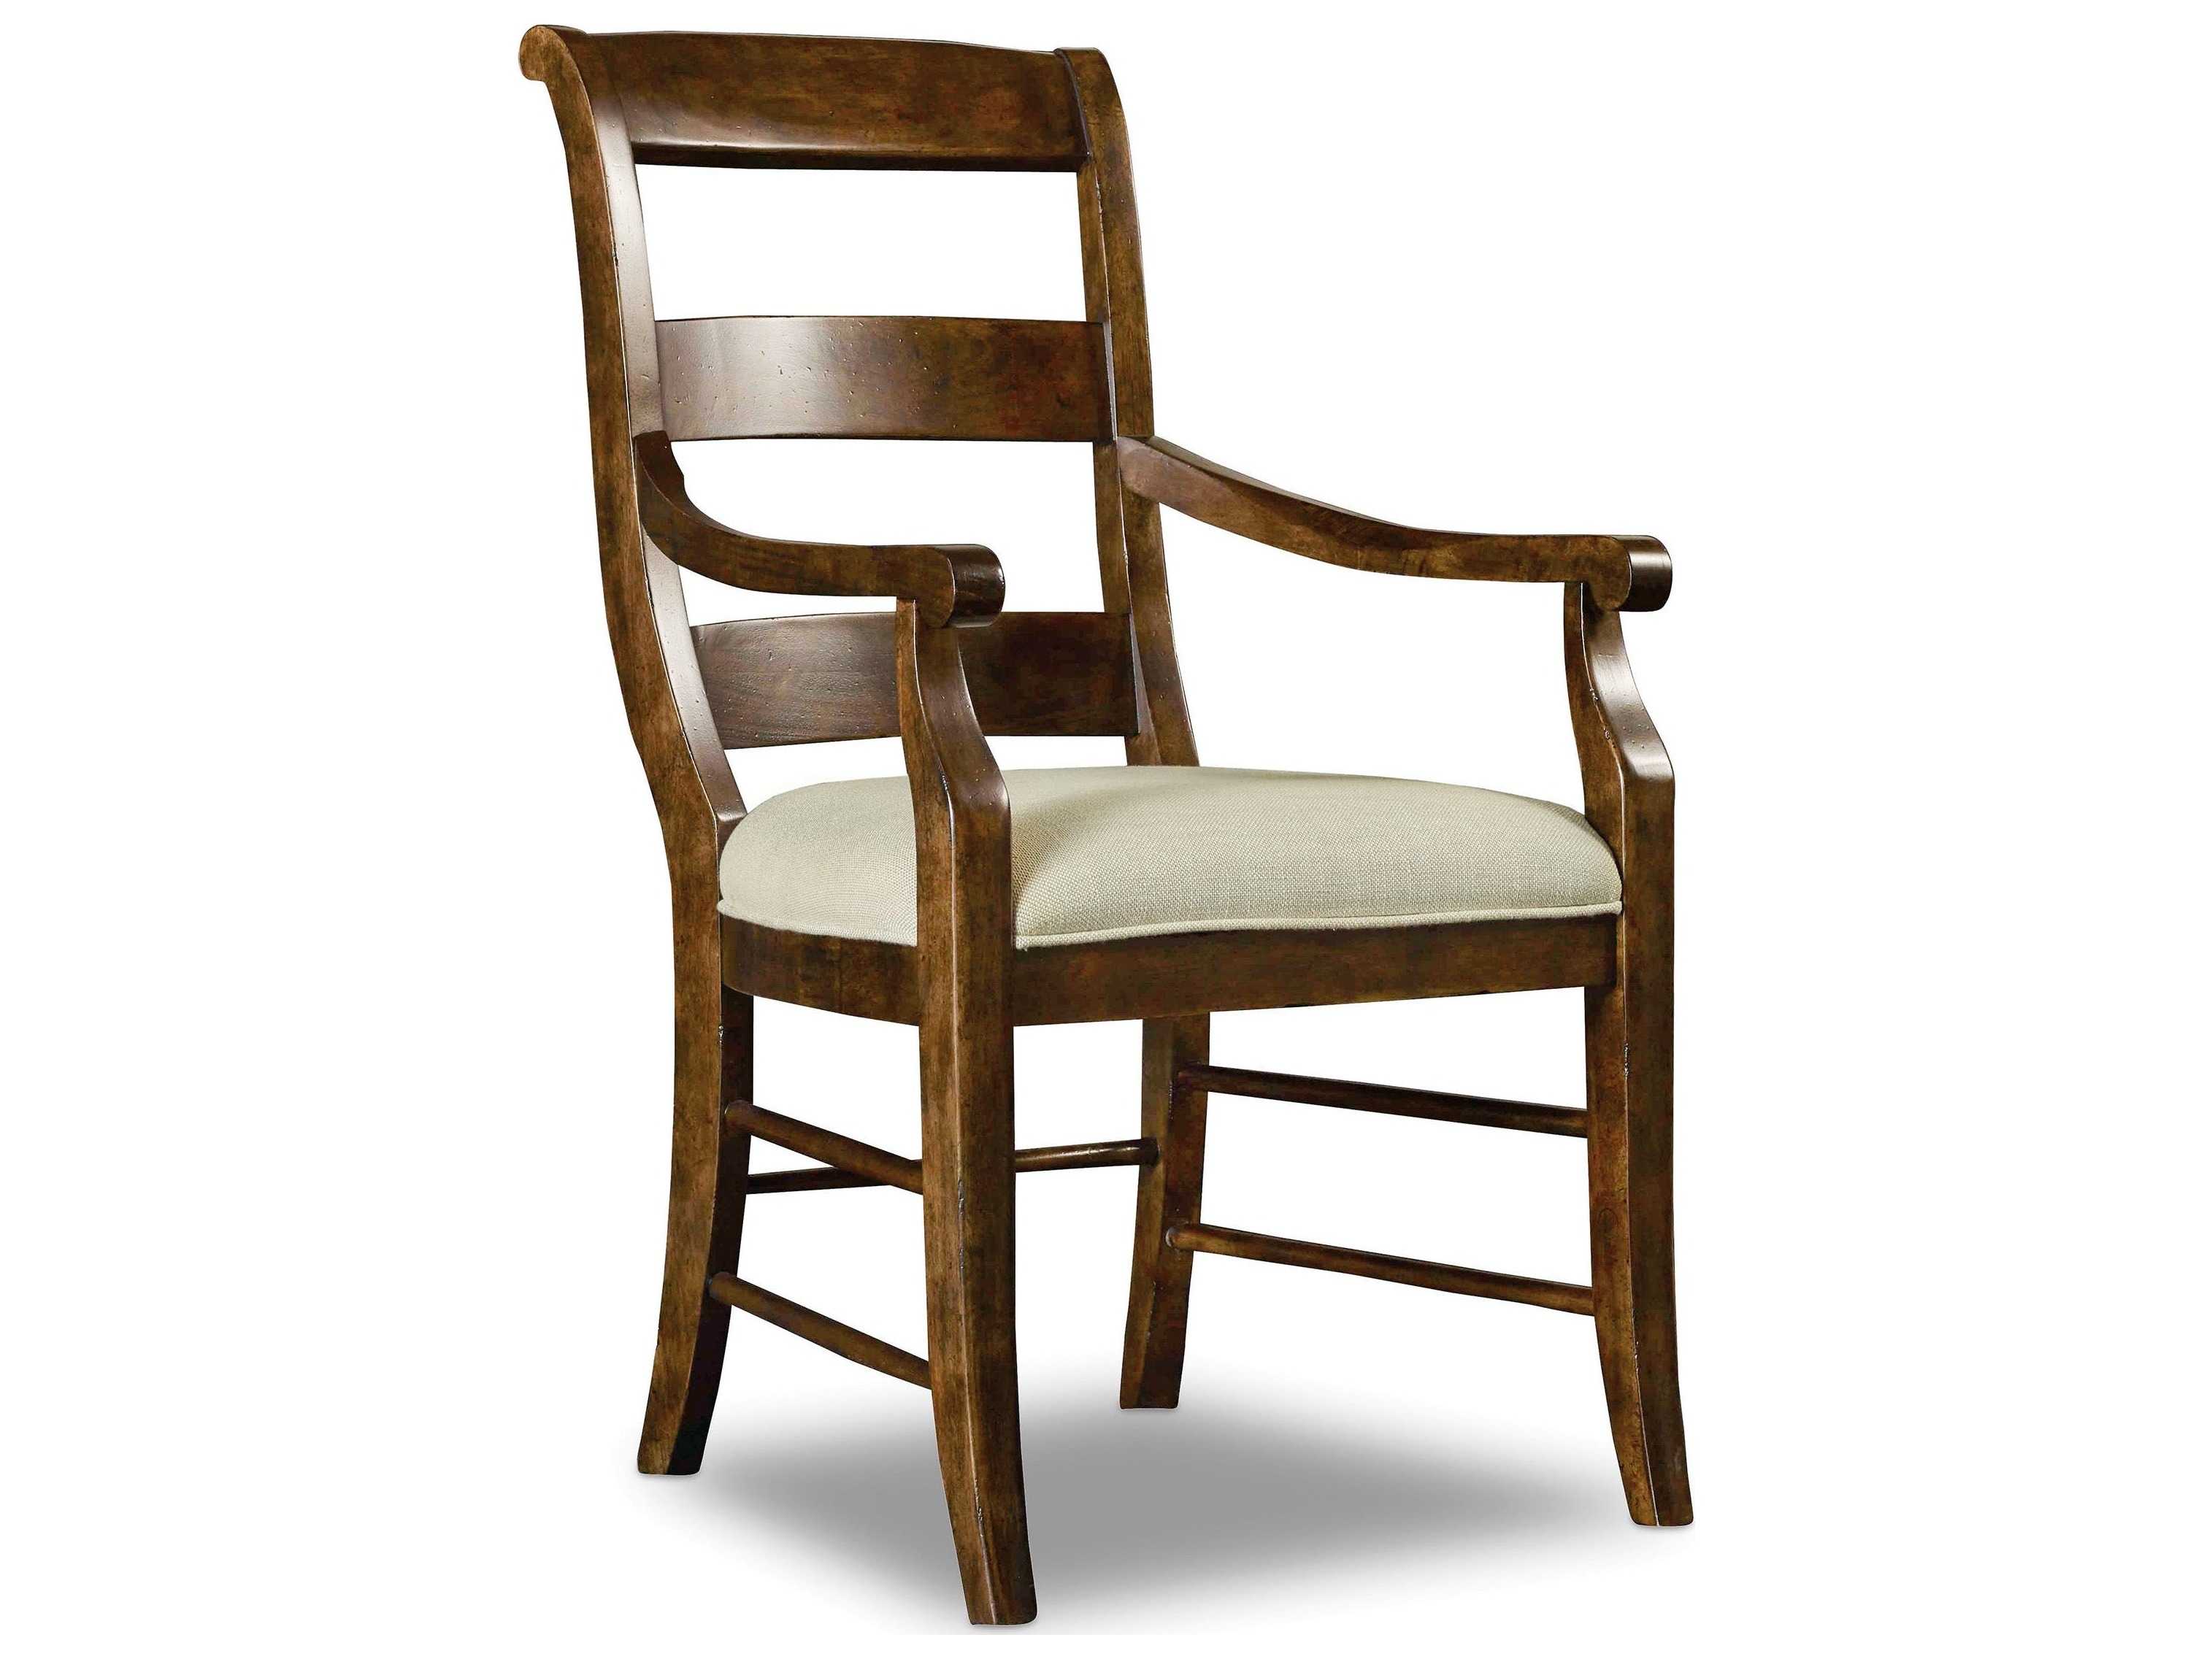 деревянное кресло с мягкой обивкой